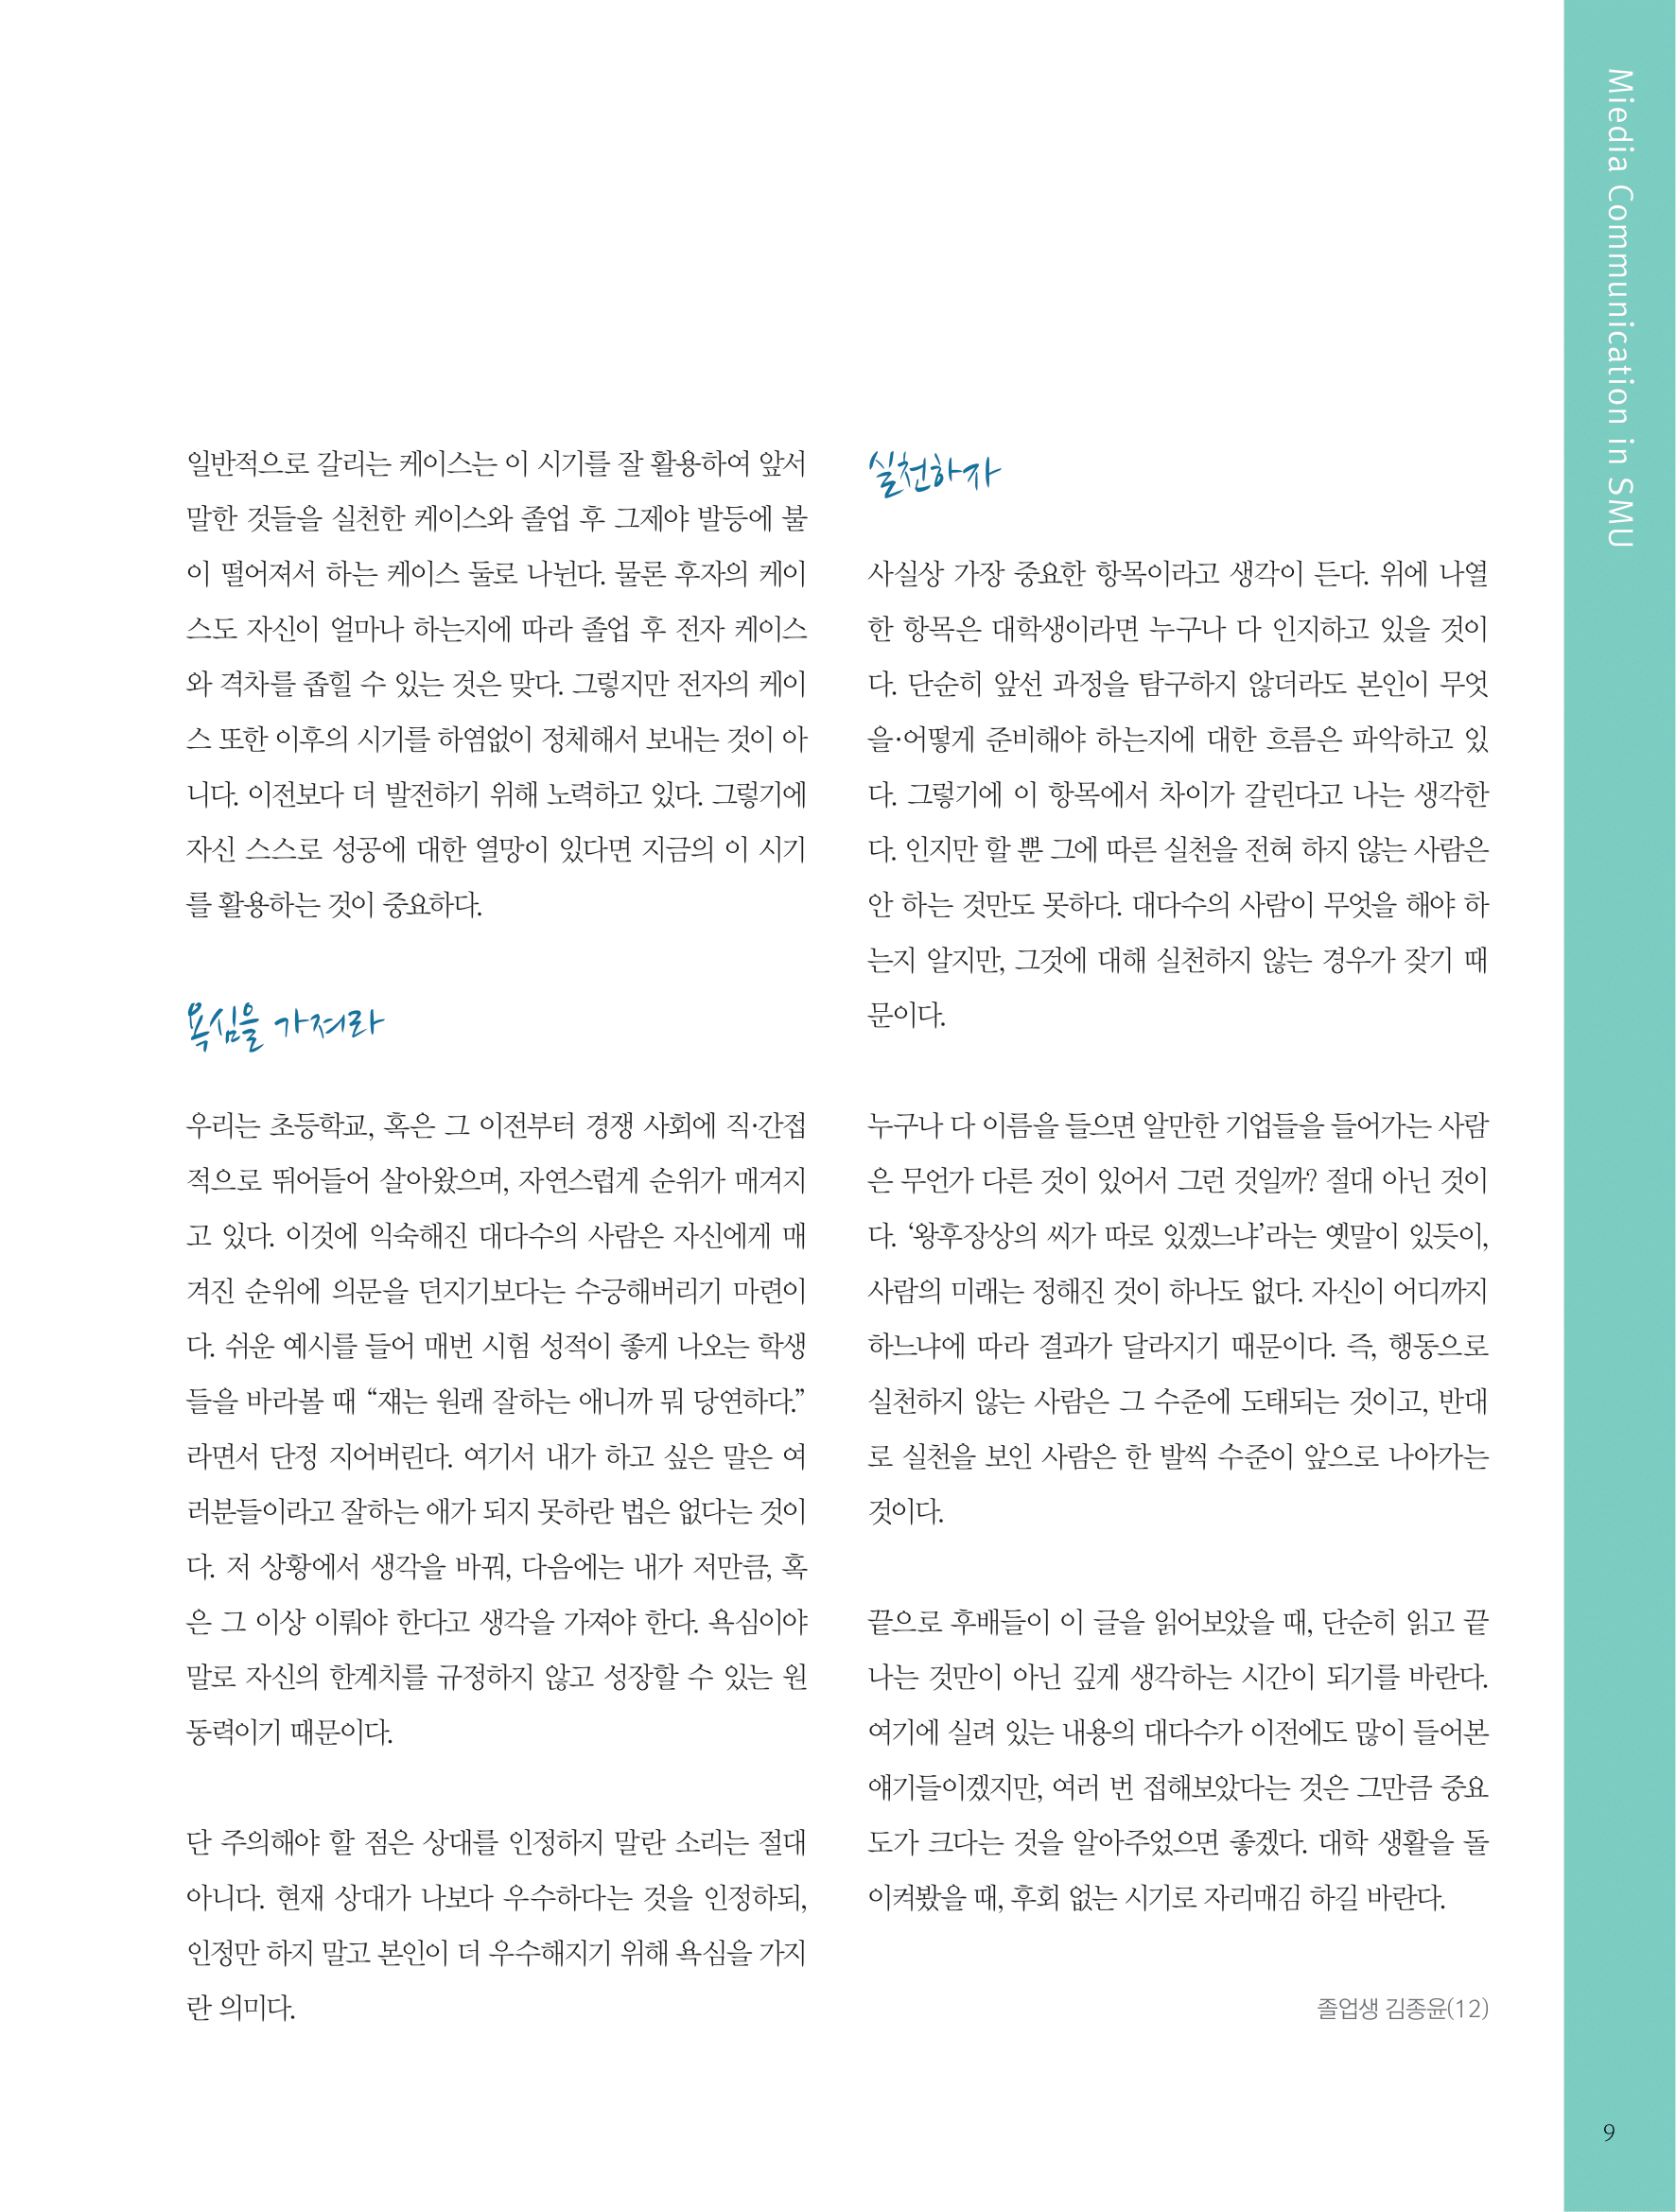 뜻새김 신문 75호 7